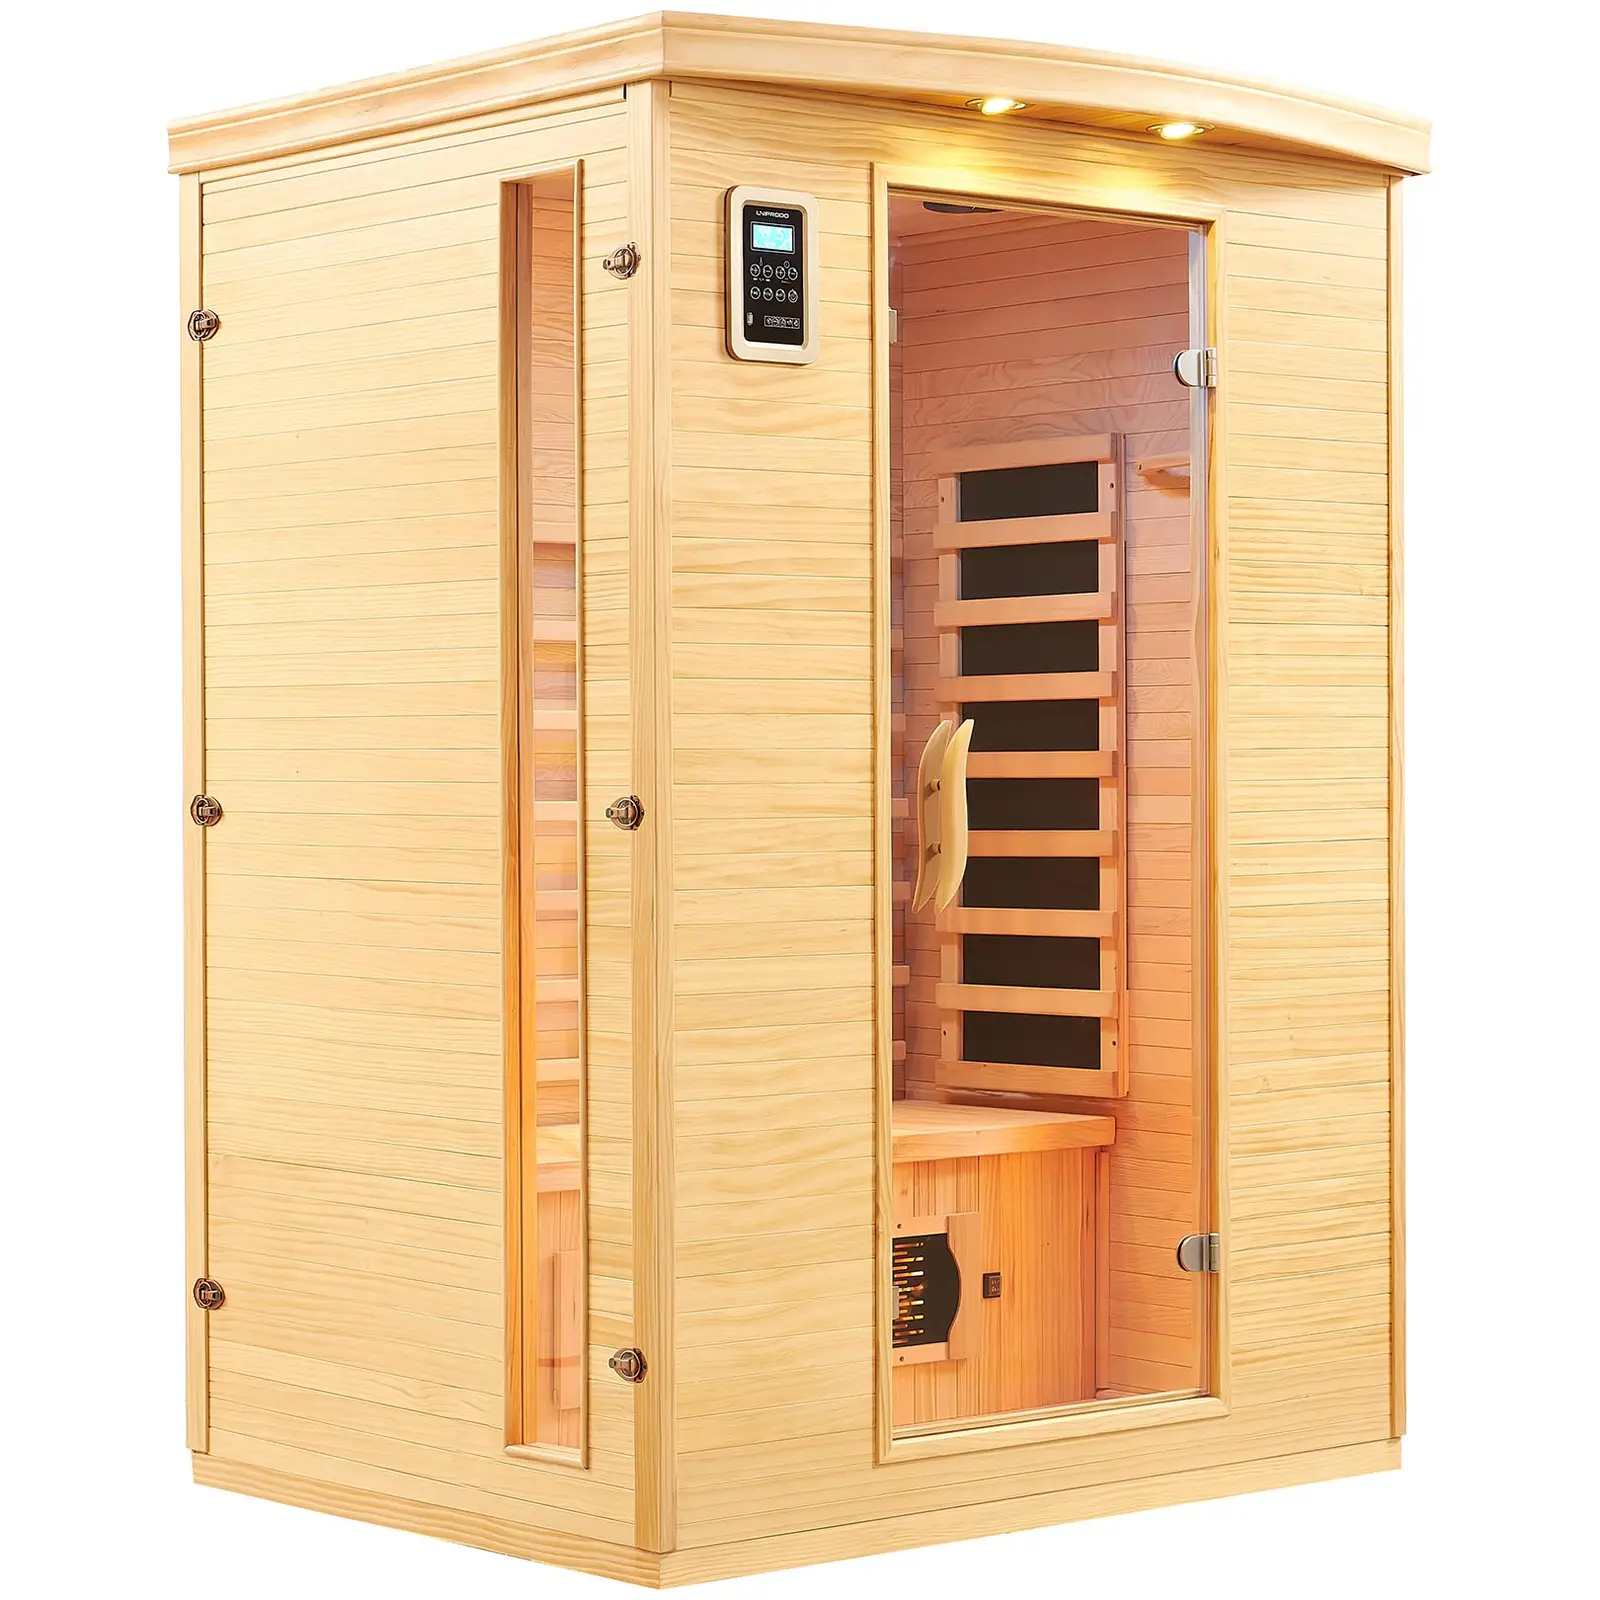 Sauna infrarouge - 5 émetteurs à spectre complet - 2 personnes - 2 100 W - 15-65 °C